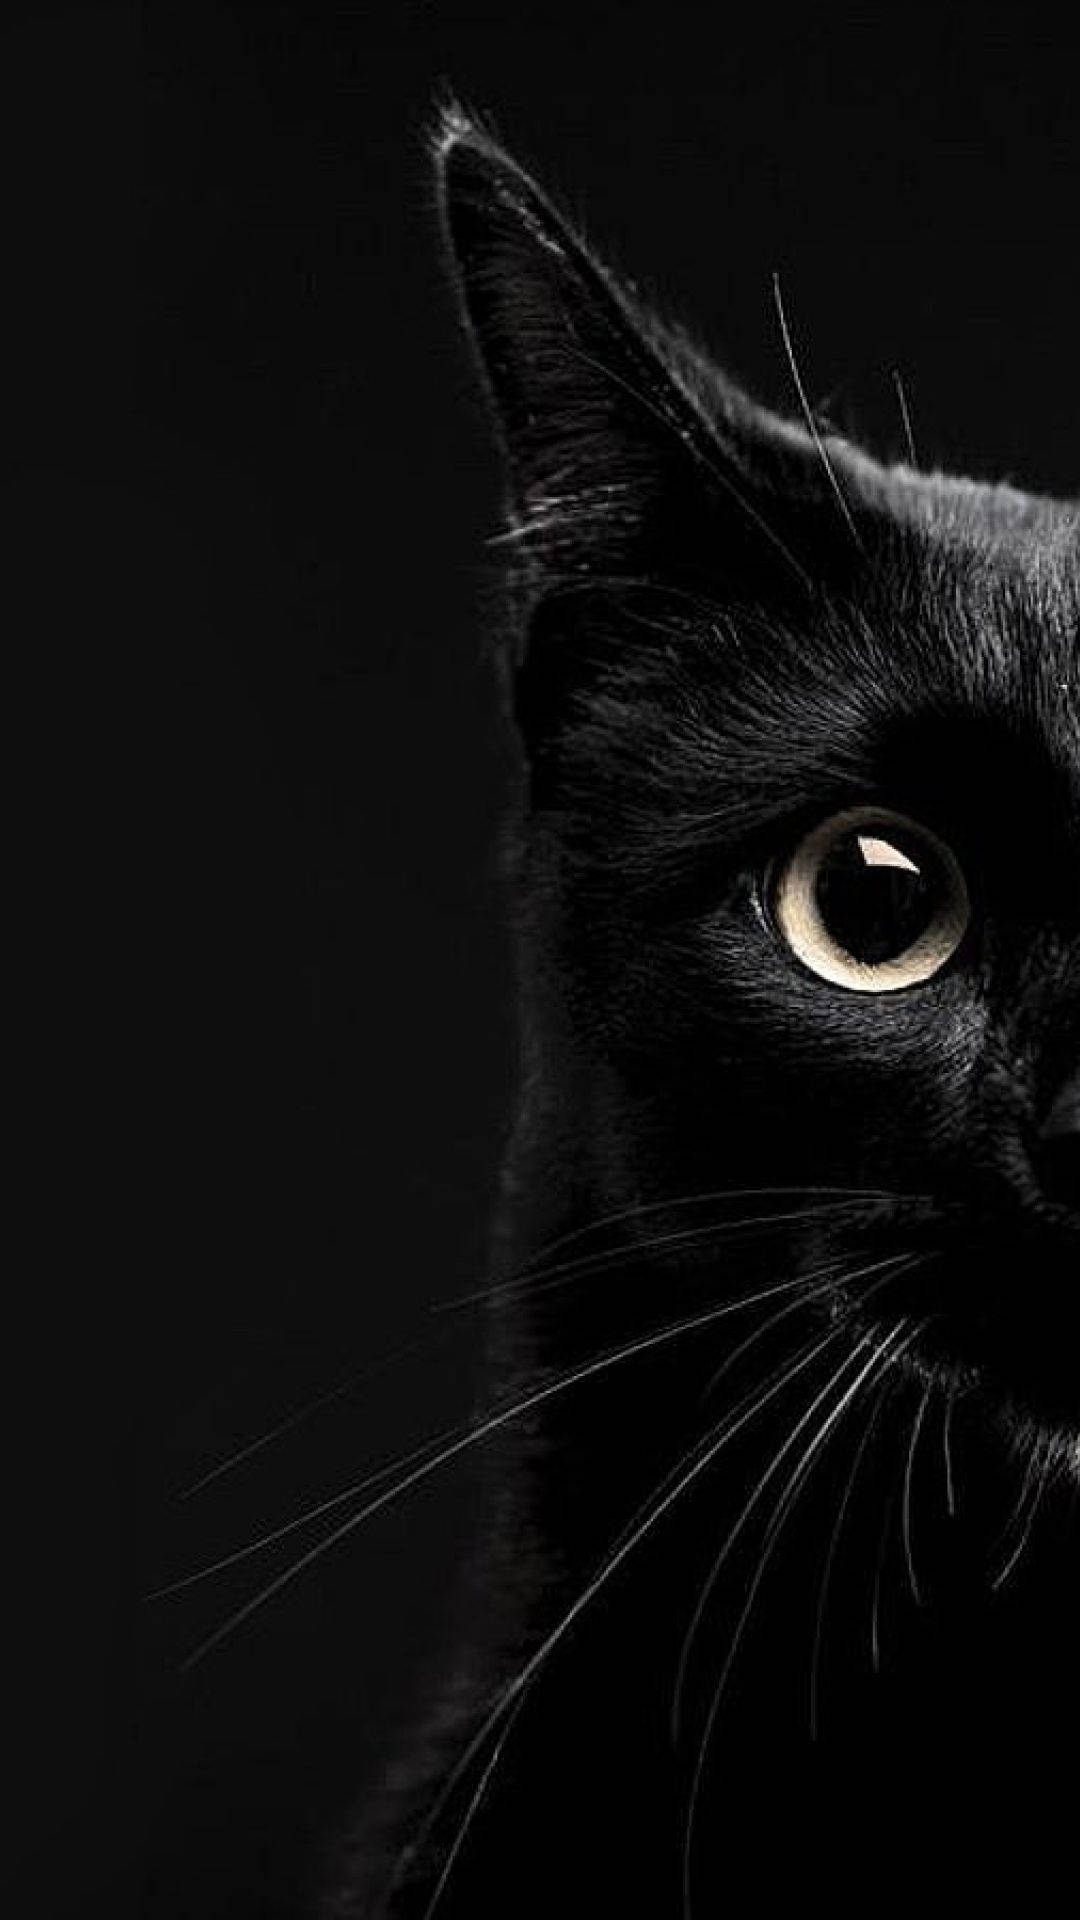 Aesthetic Half Shot Black Cat Iphone Wallpaper